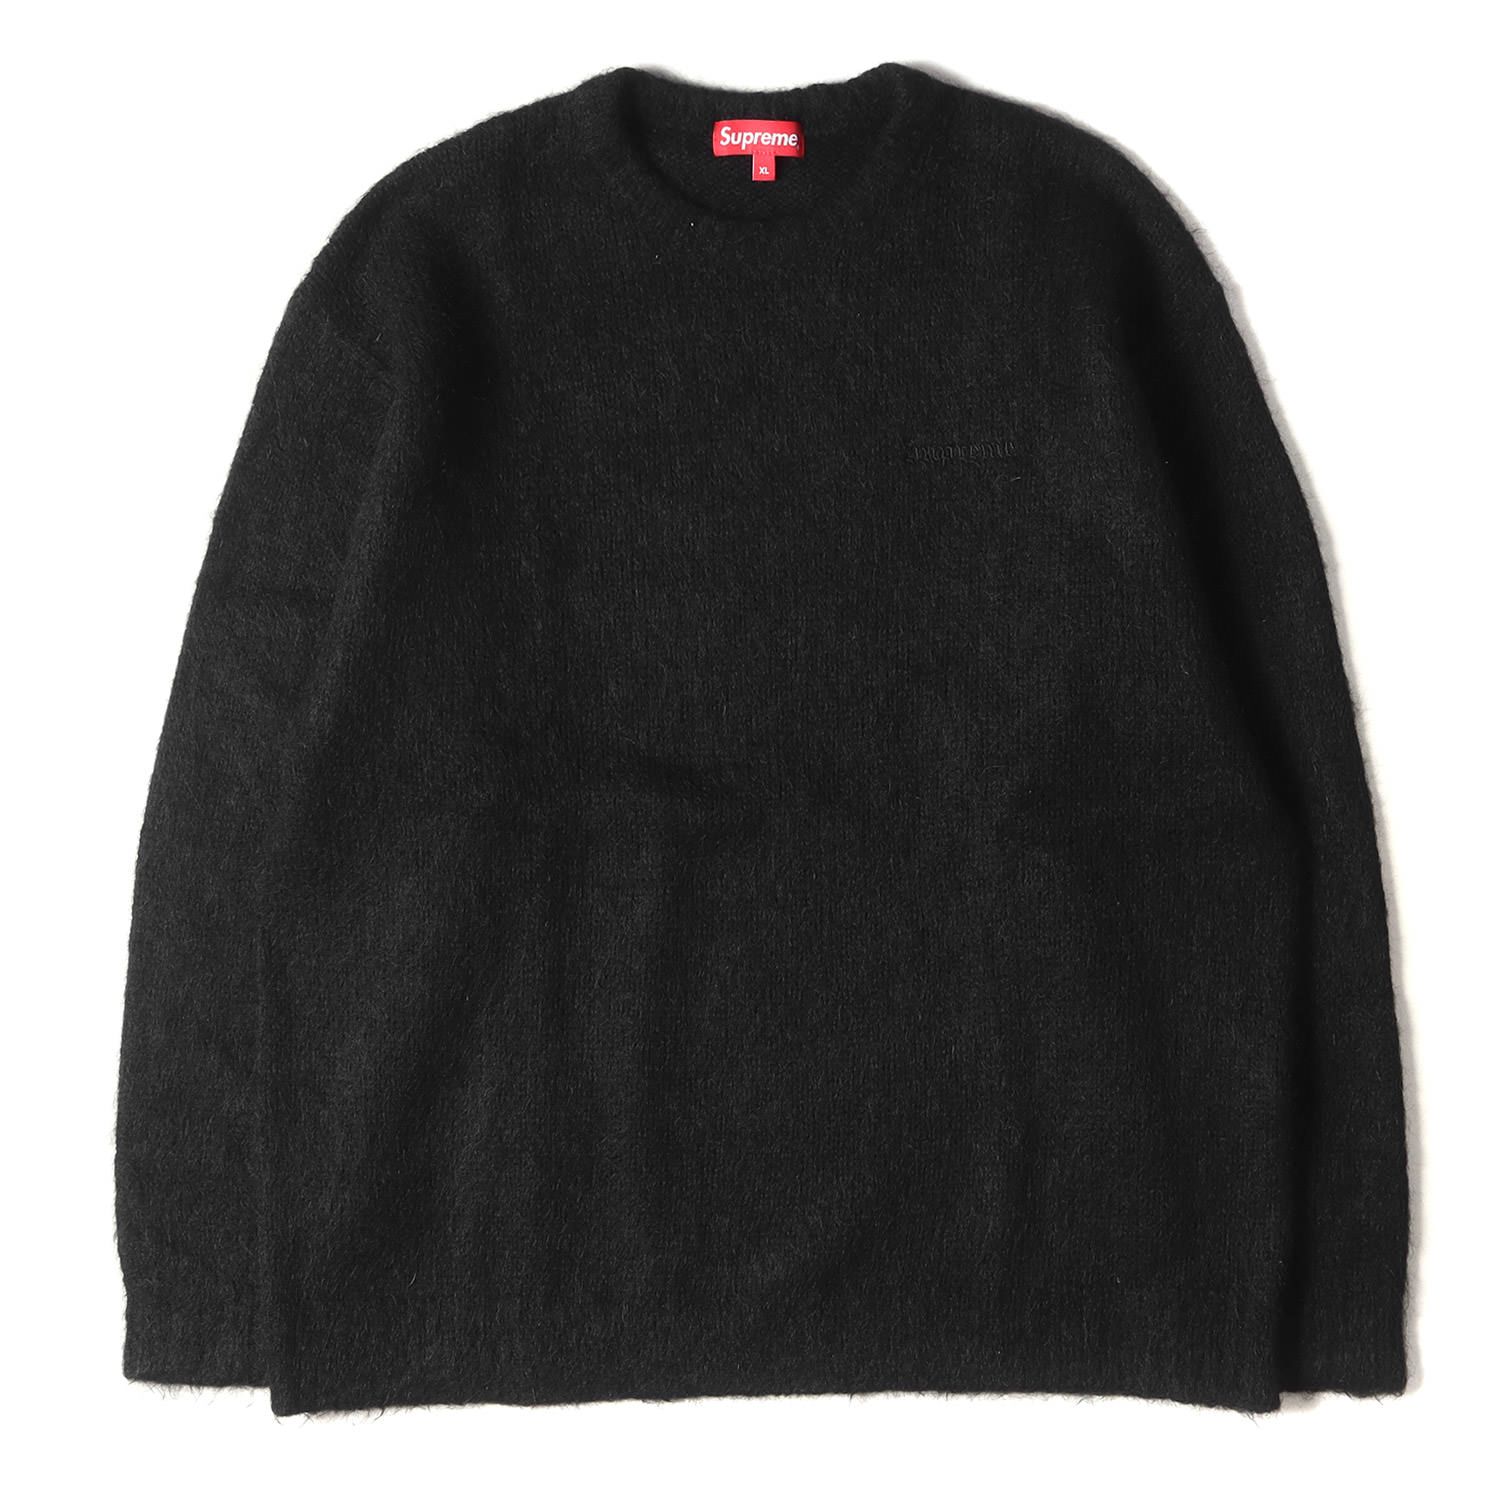 ニット/セーターsupreme mohair sweater black - ニット/セーター